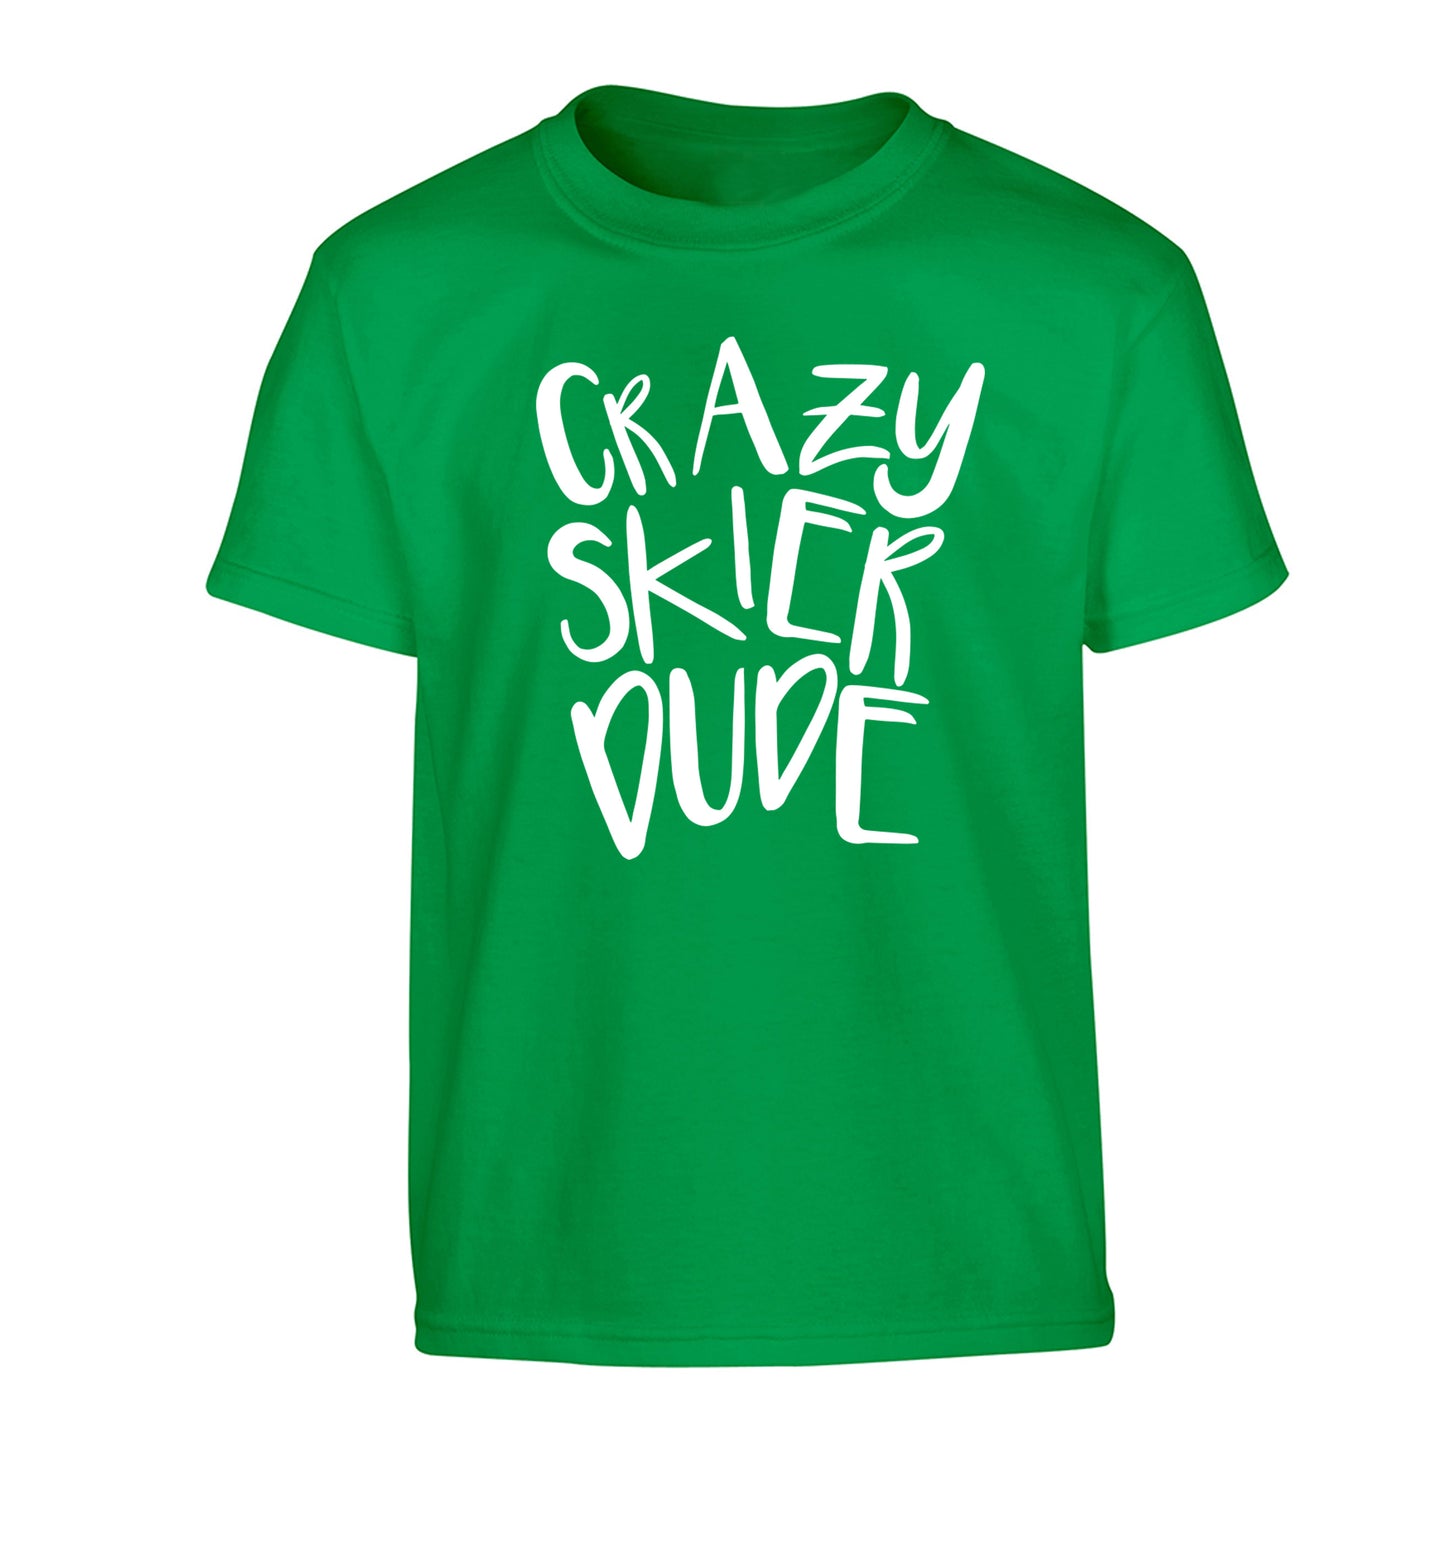 Crazy skier dude Children's green Tshirt 12-14 Years